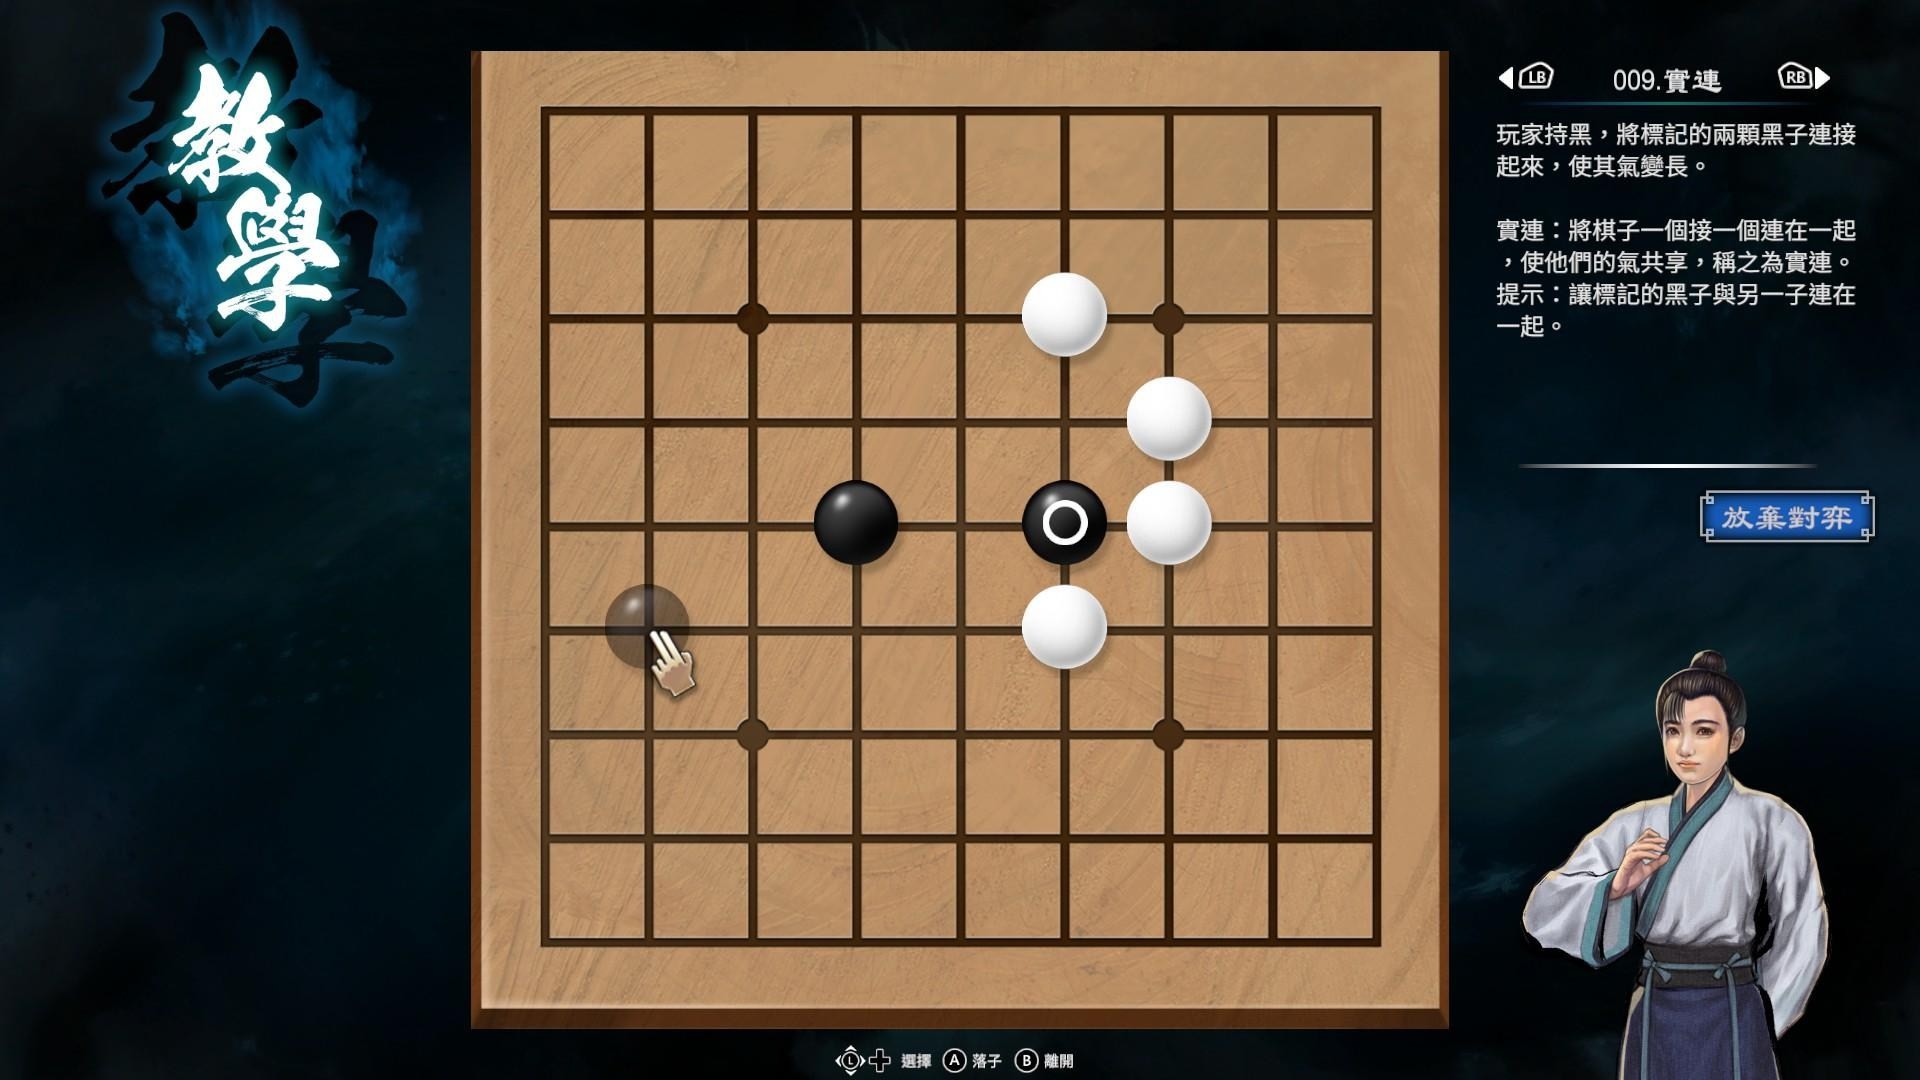 《天命奇御2》围棋基本概念与棋型解法介绍 - 第2张